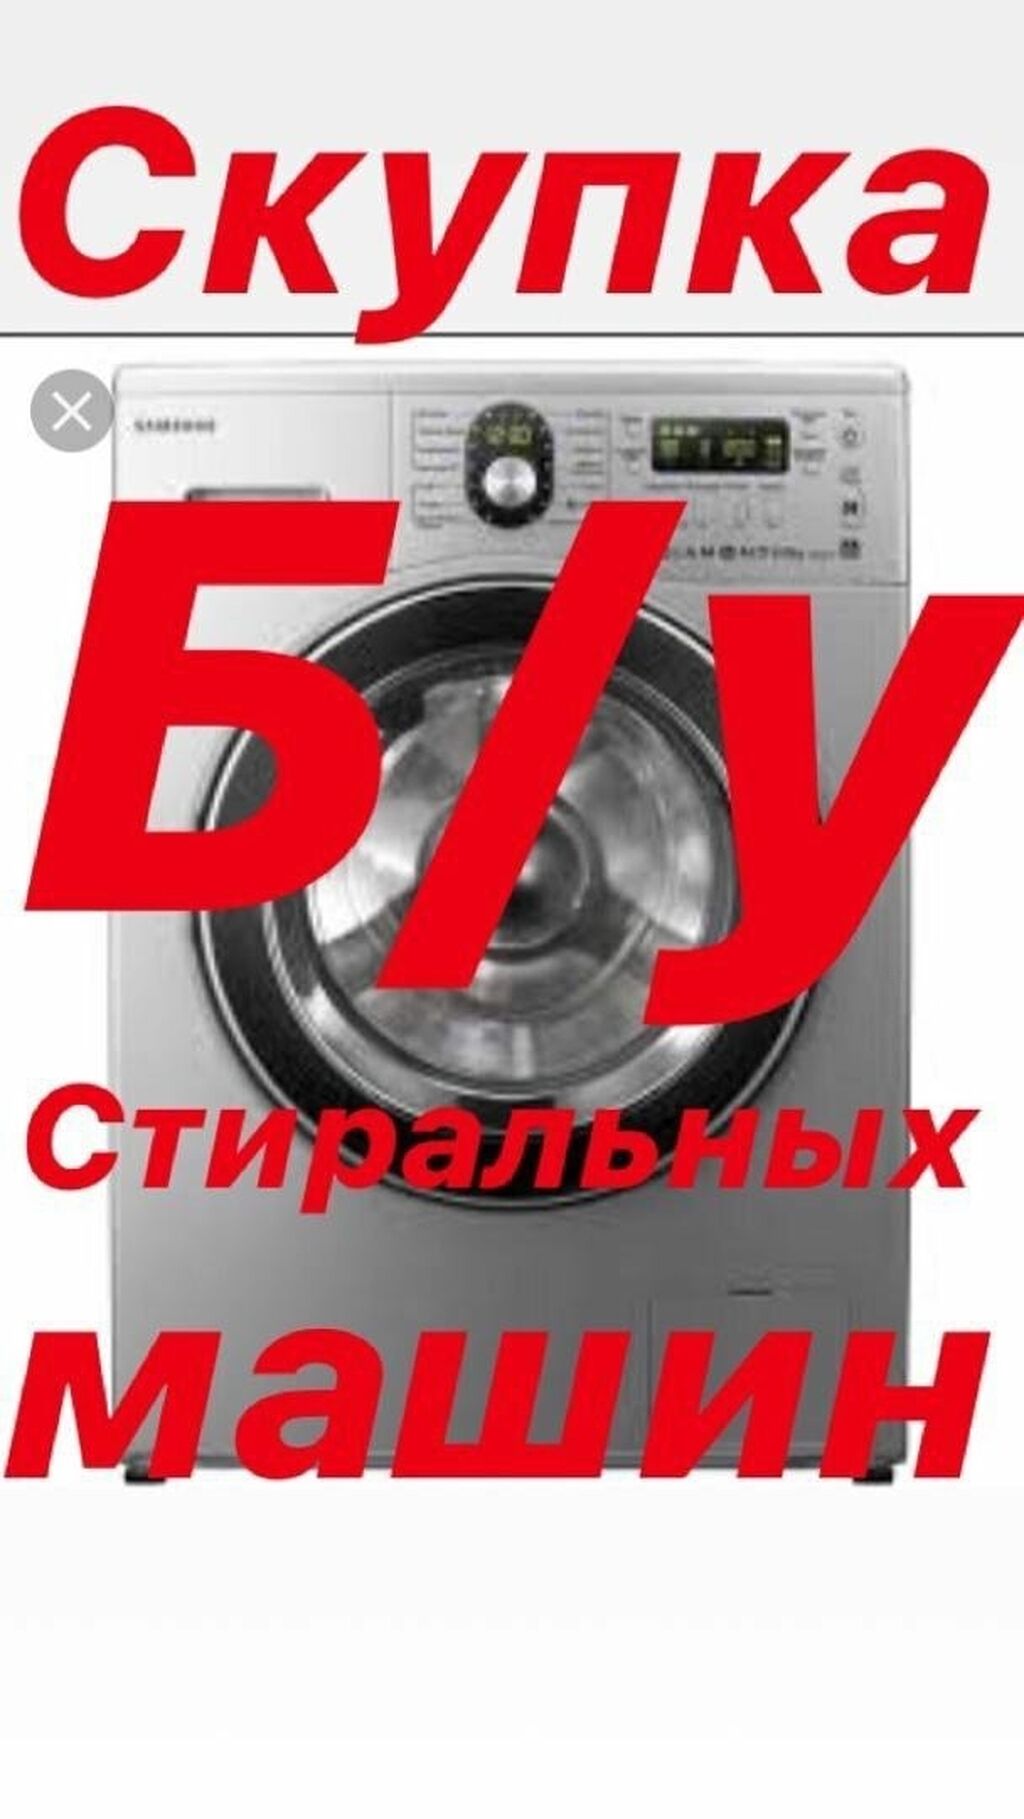 Где можно сдать стиральную машину. Скупка стиральных машин. Скупаю Стиральные машинки. Выкуп стиральных машин. Выкуп утилизация стиральных машин.